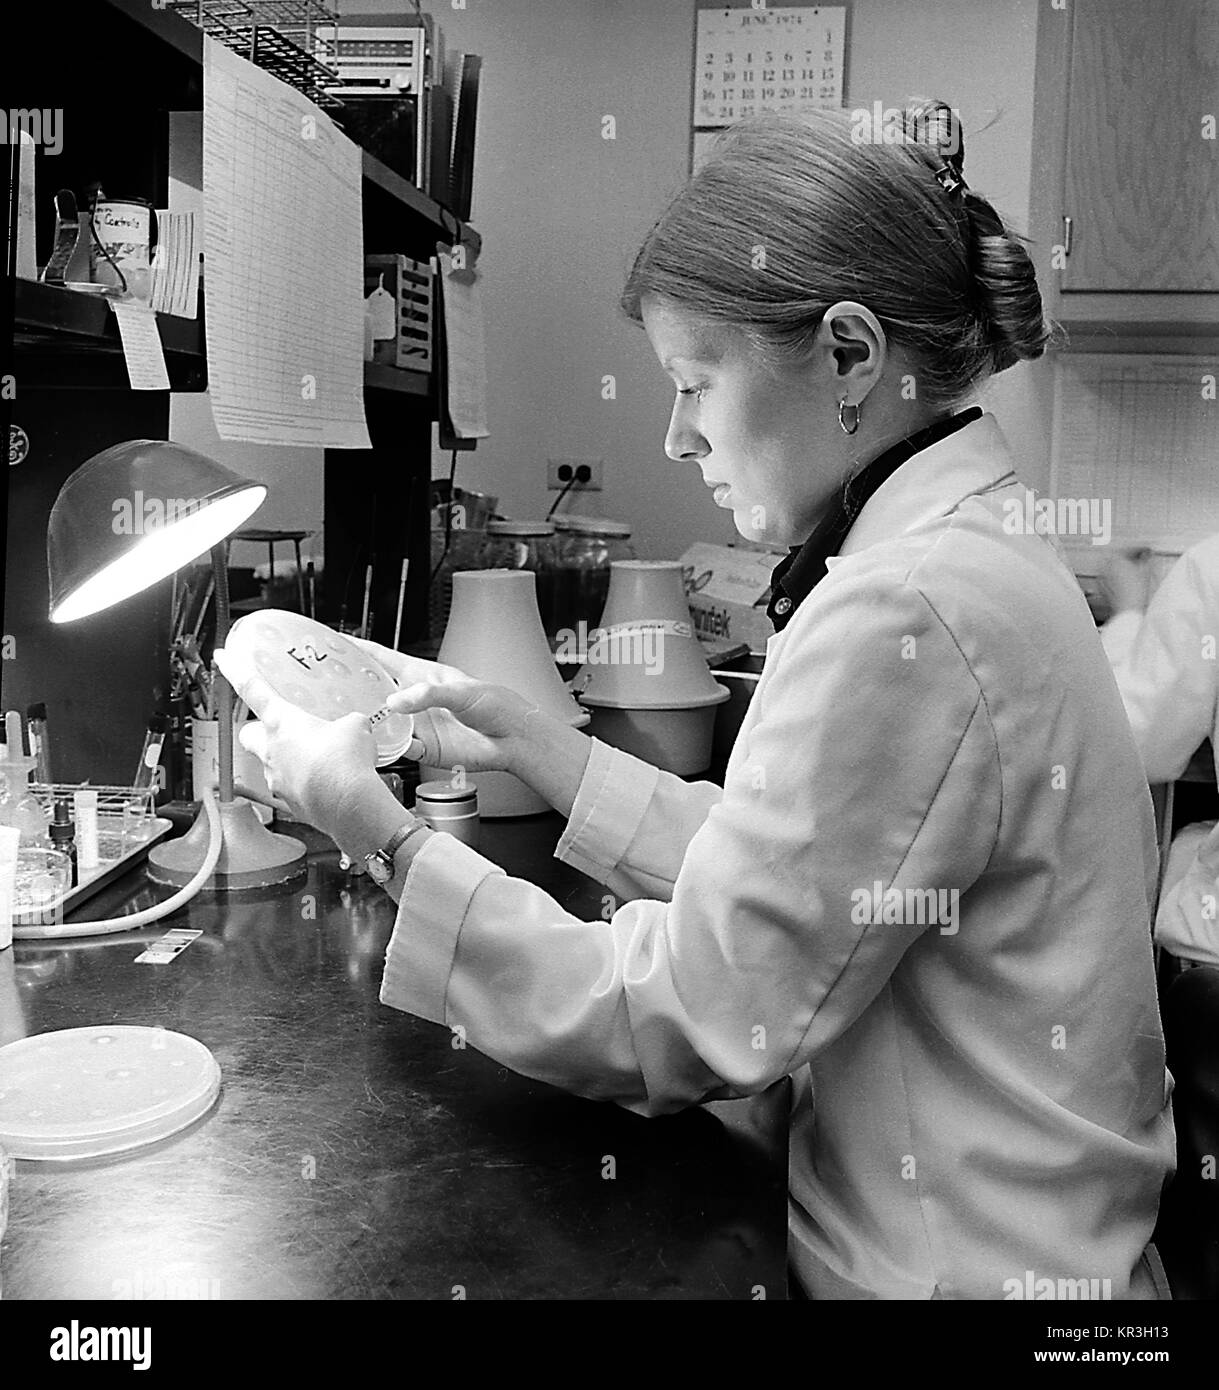 Un laboratorian in un laboratorio di batteriologia sta esaminando una capsula di Petri di cultura. Questo tecnico è la misurazione di zone di inibizione come risultato di un antibiotico di test di suscettibilità, 1974. Immagine cortesia CDC. Foto Stock